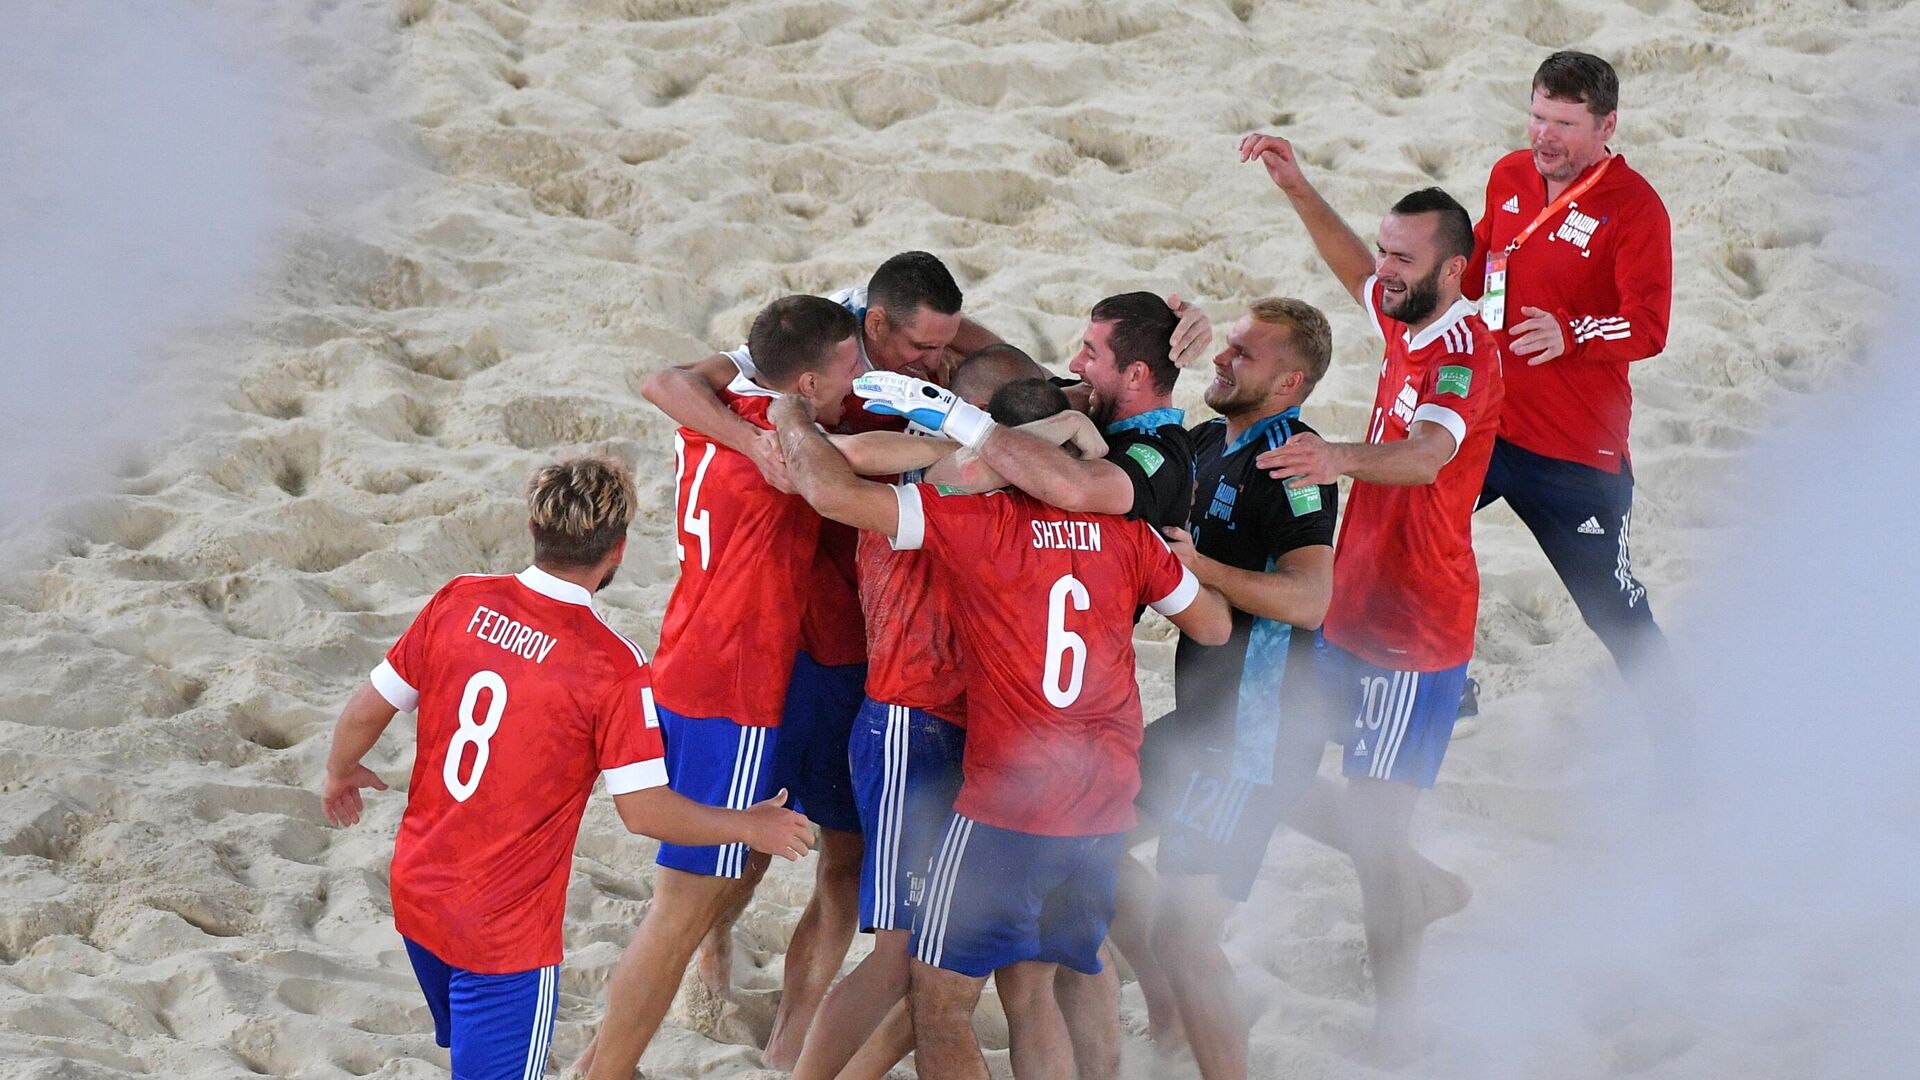 Rusia celebra su victoria en el Mundial de fútbol playa 2021 - Sputnik Mundo, 1920, 29.08.2021